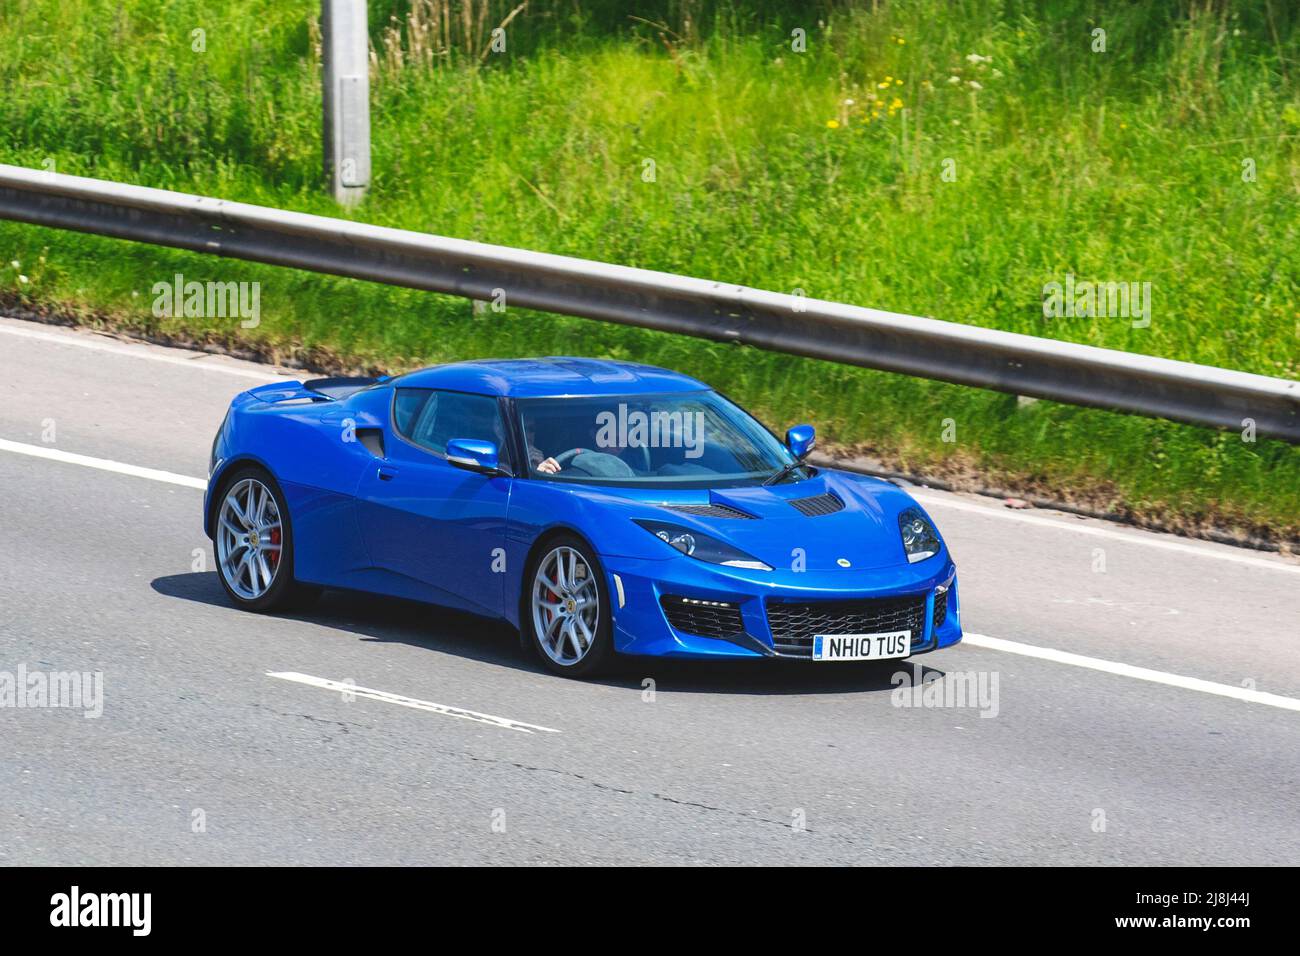 2016 blauer LOTUS EVORA 24V V6 3456cc Benziner Performance Supersportwagen; ein federleichtes Sportcoupé auf der Autobahn M6, Großbritannien Stockfoto